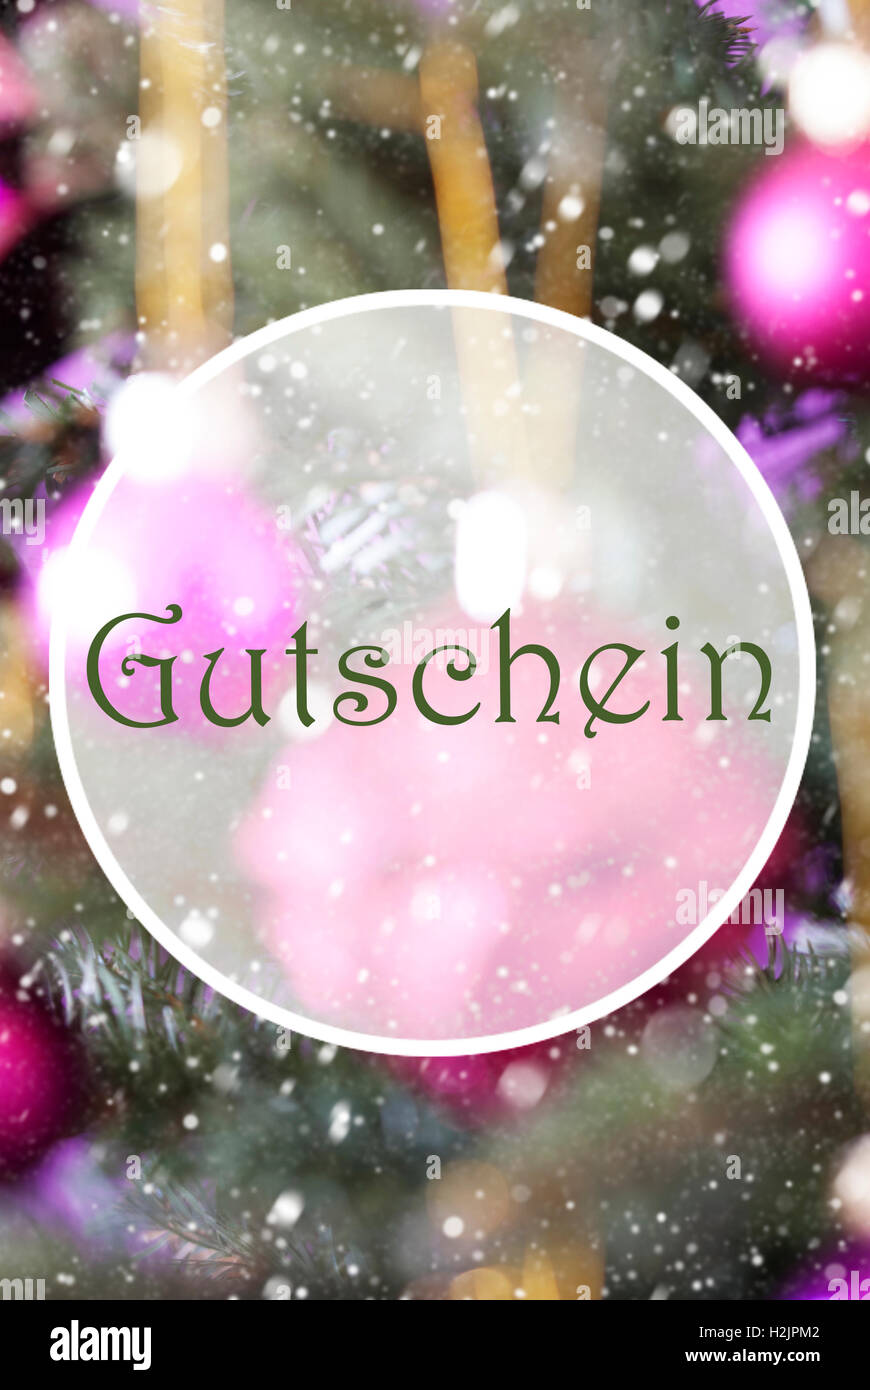 Vertical Rose Quartz Balls, Gutschein Means Voucher Stock Photo